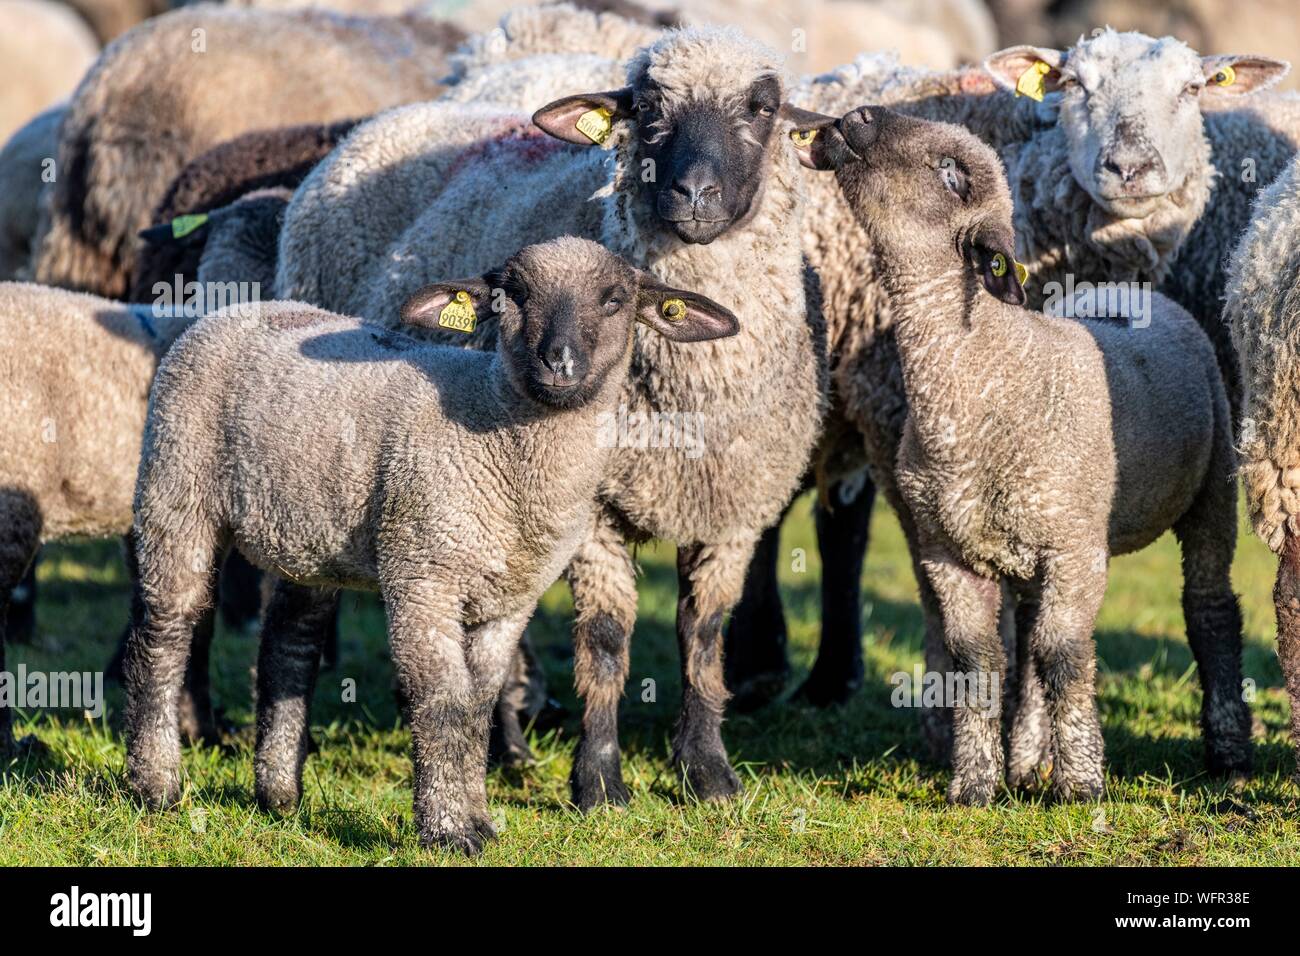 Francia, Somme, Baie de Somme Le Crotoy, sale prato pecore in Baie de Somme in primavera, in questo periodo dell'anno, pecore hanno ancora i loro la lana e gli agnelli sono ancora piccole, un paio di capre accompagna il gregge che lo guidi nei prati Foto Stock